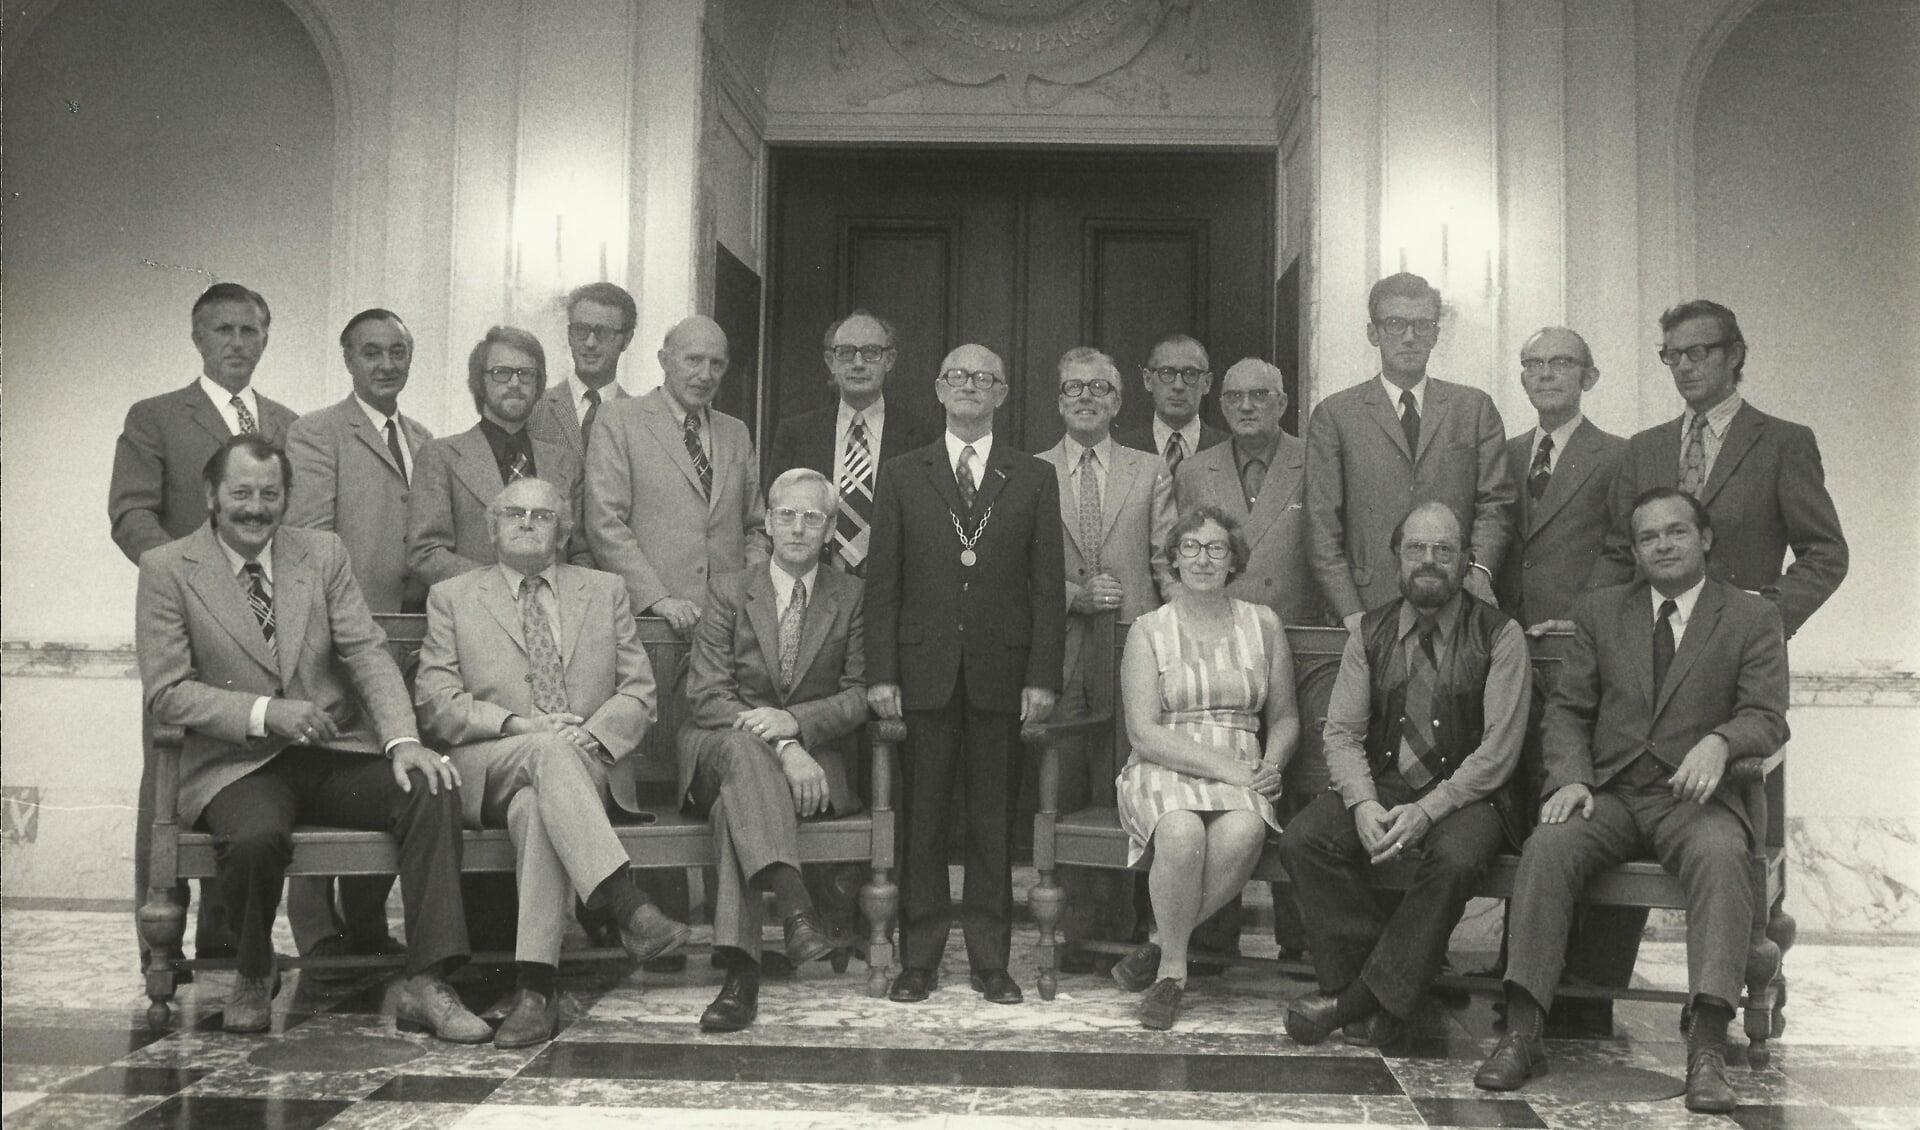 De gemeenteraad van Weesp in 1974 is klaar voor de voorliggende bestuursklus. In het midden burgemeester Kooiman.